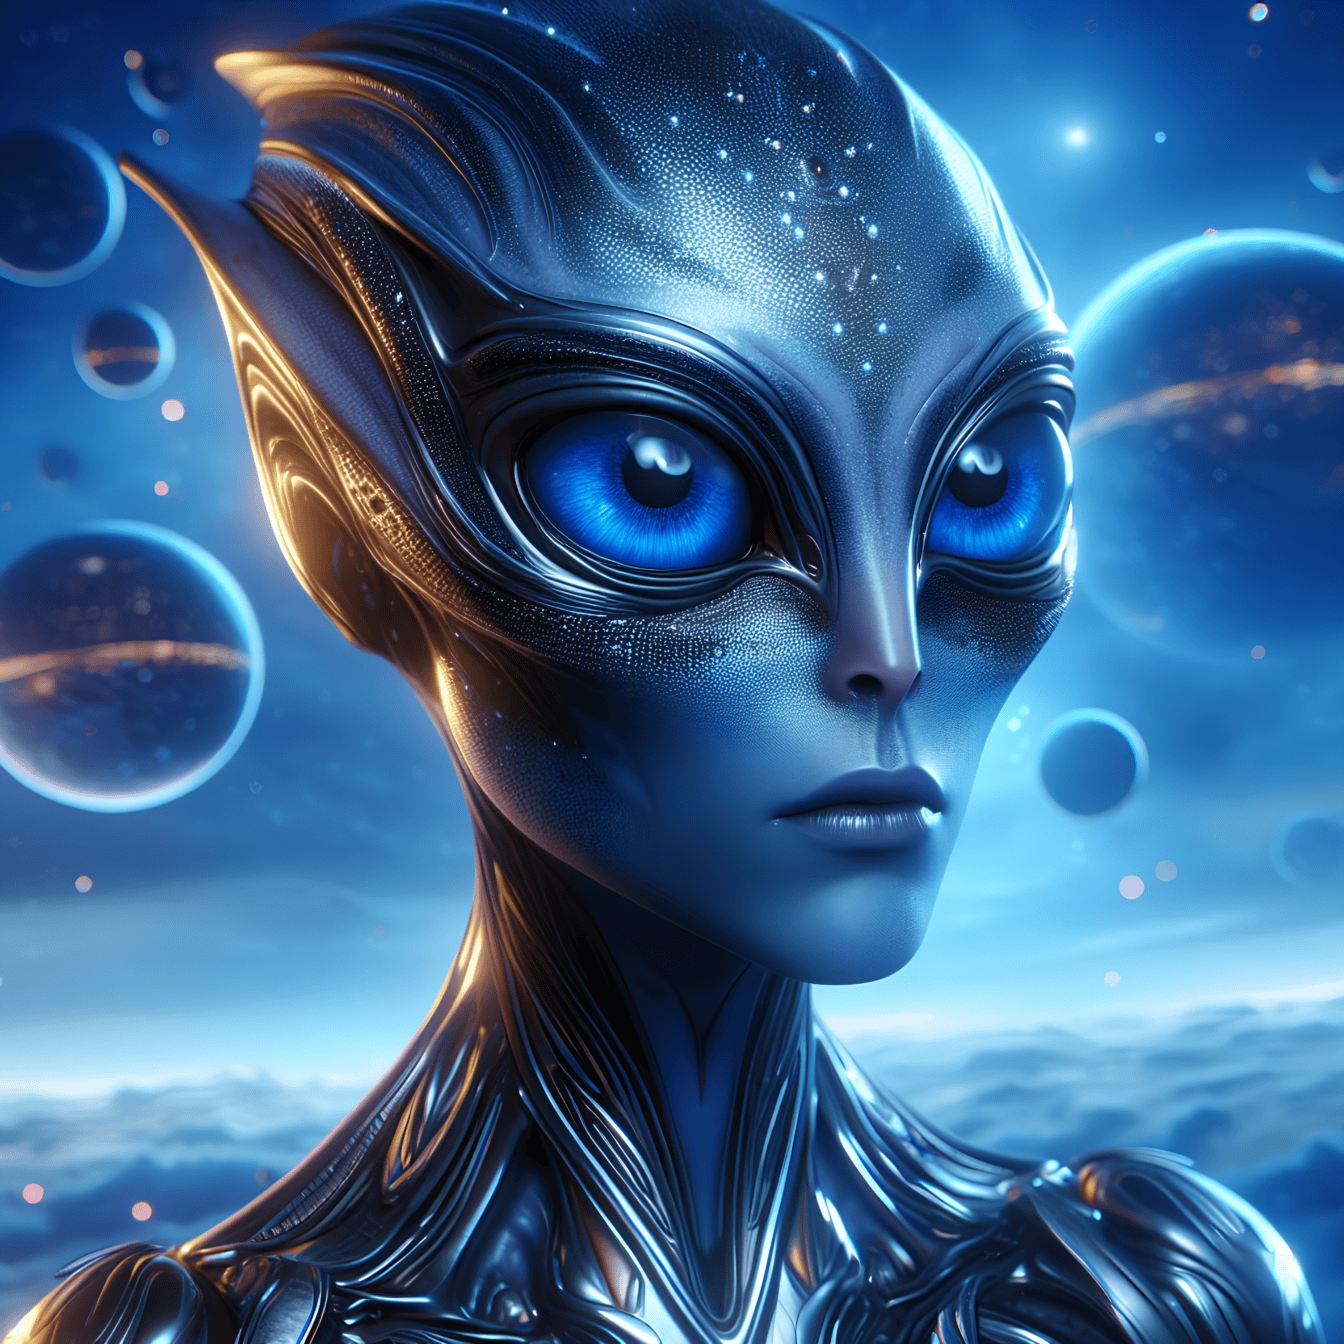 Portret ženke izvanzemaljskog kvantnog stvorenja s velikim svjetlećim tamnoplavim očima